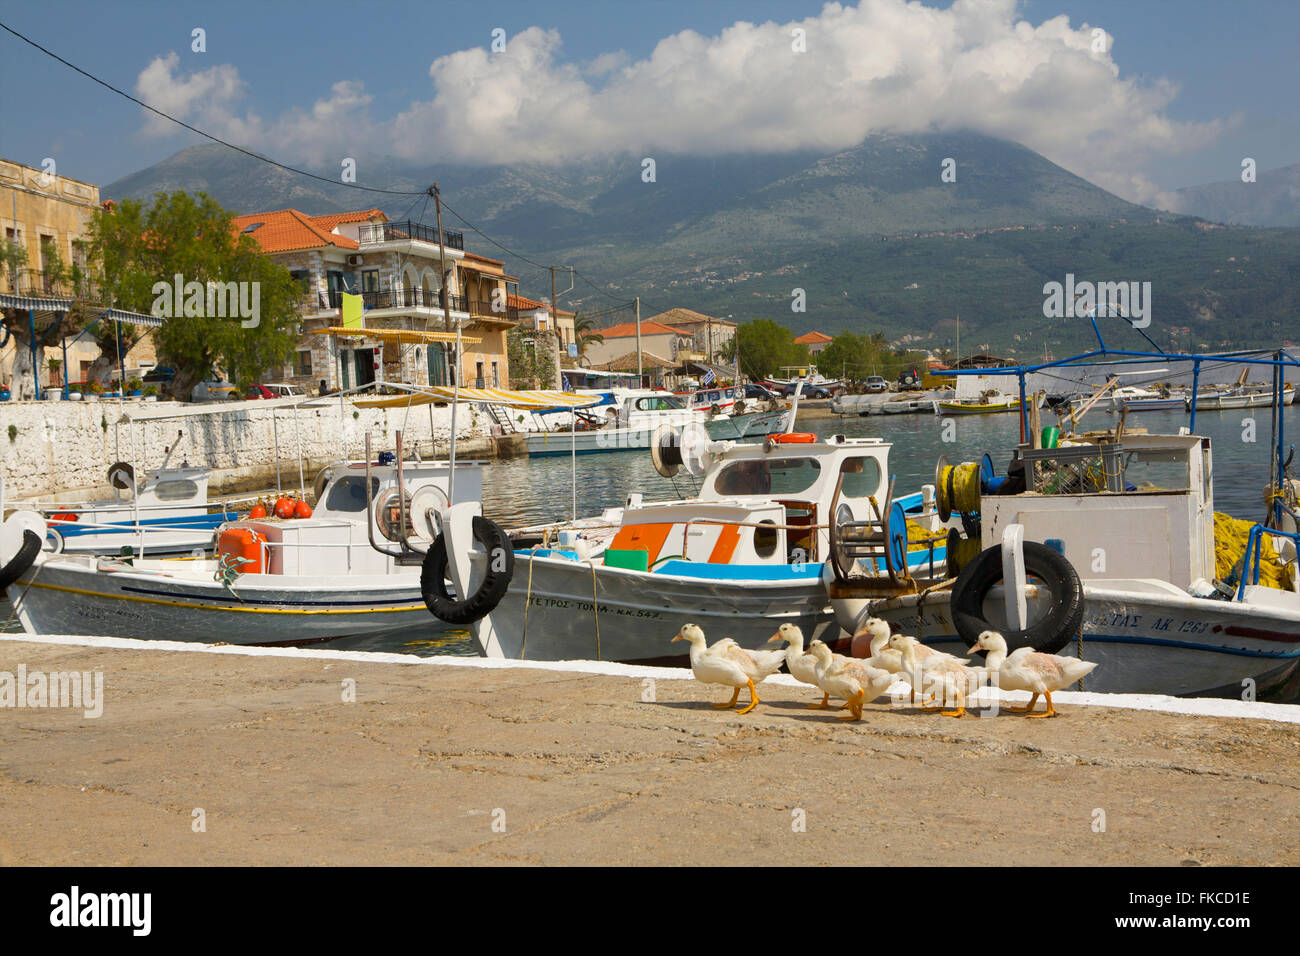 Ducks walking on a pier in Greece Stock Photo